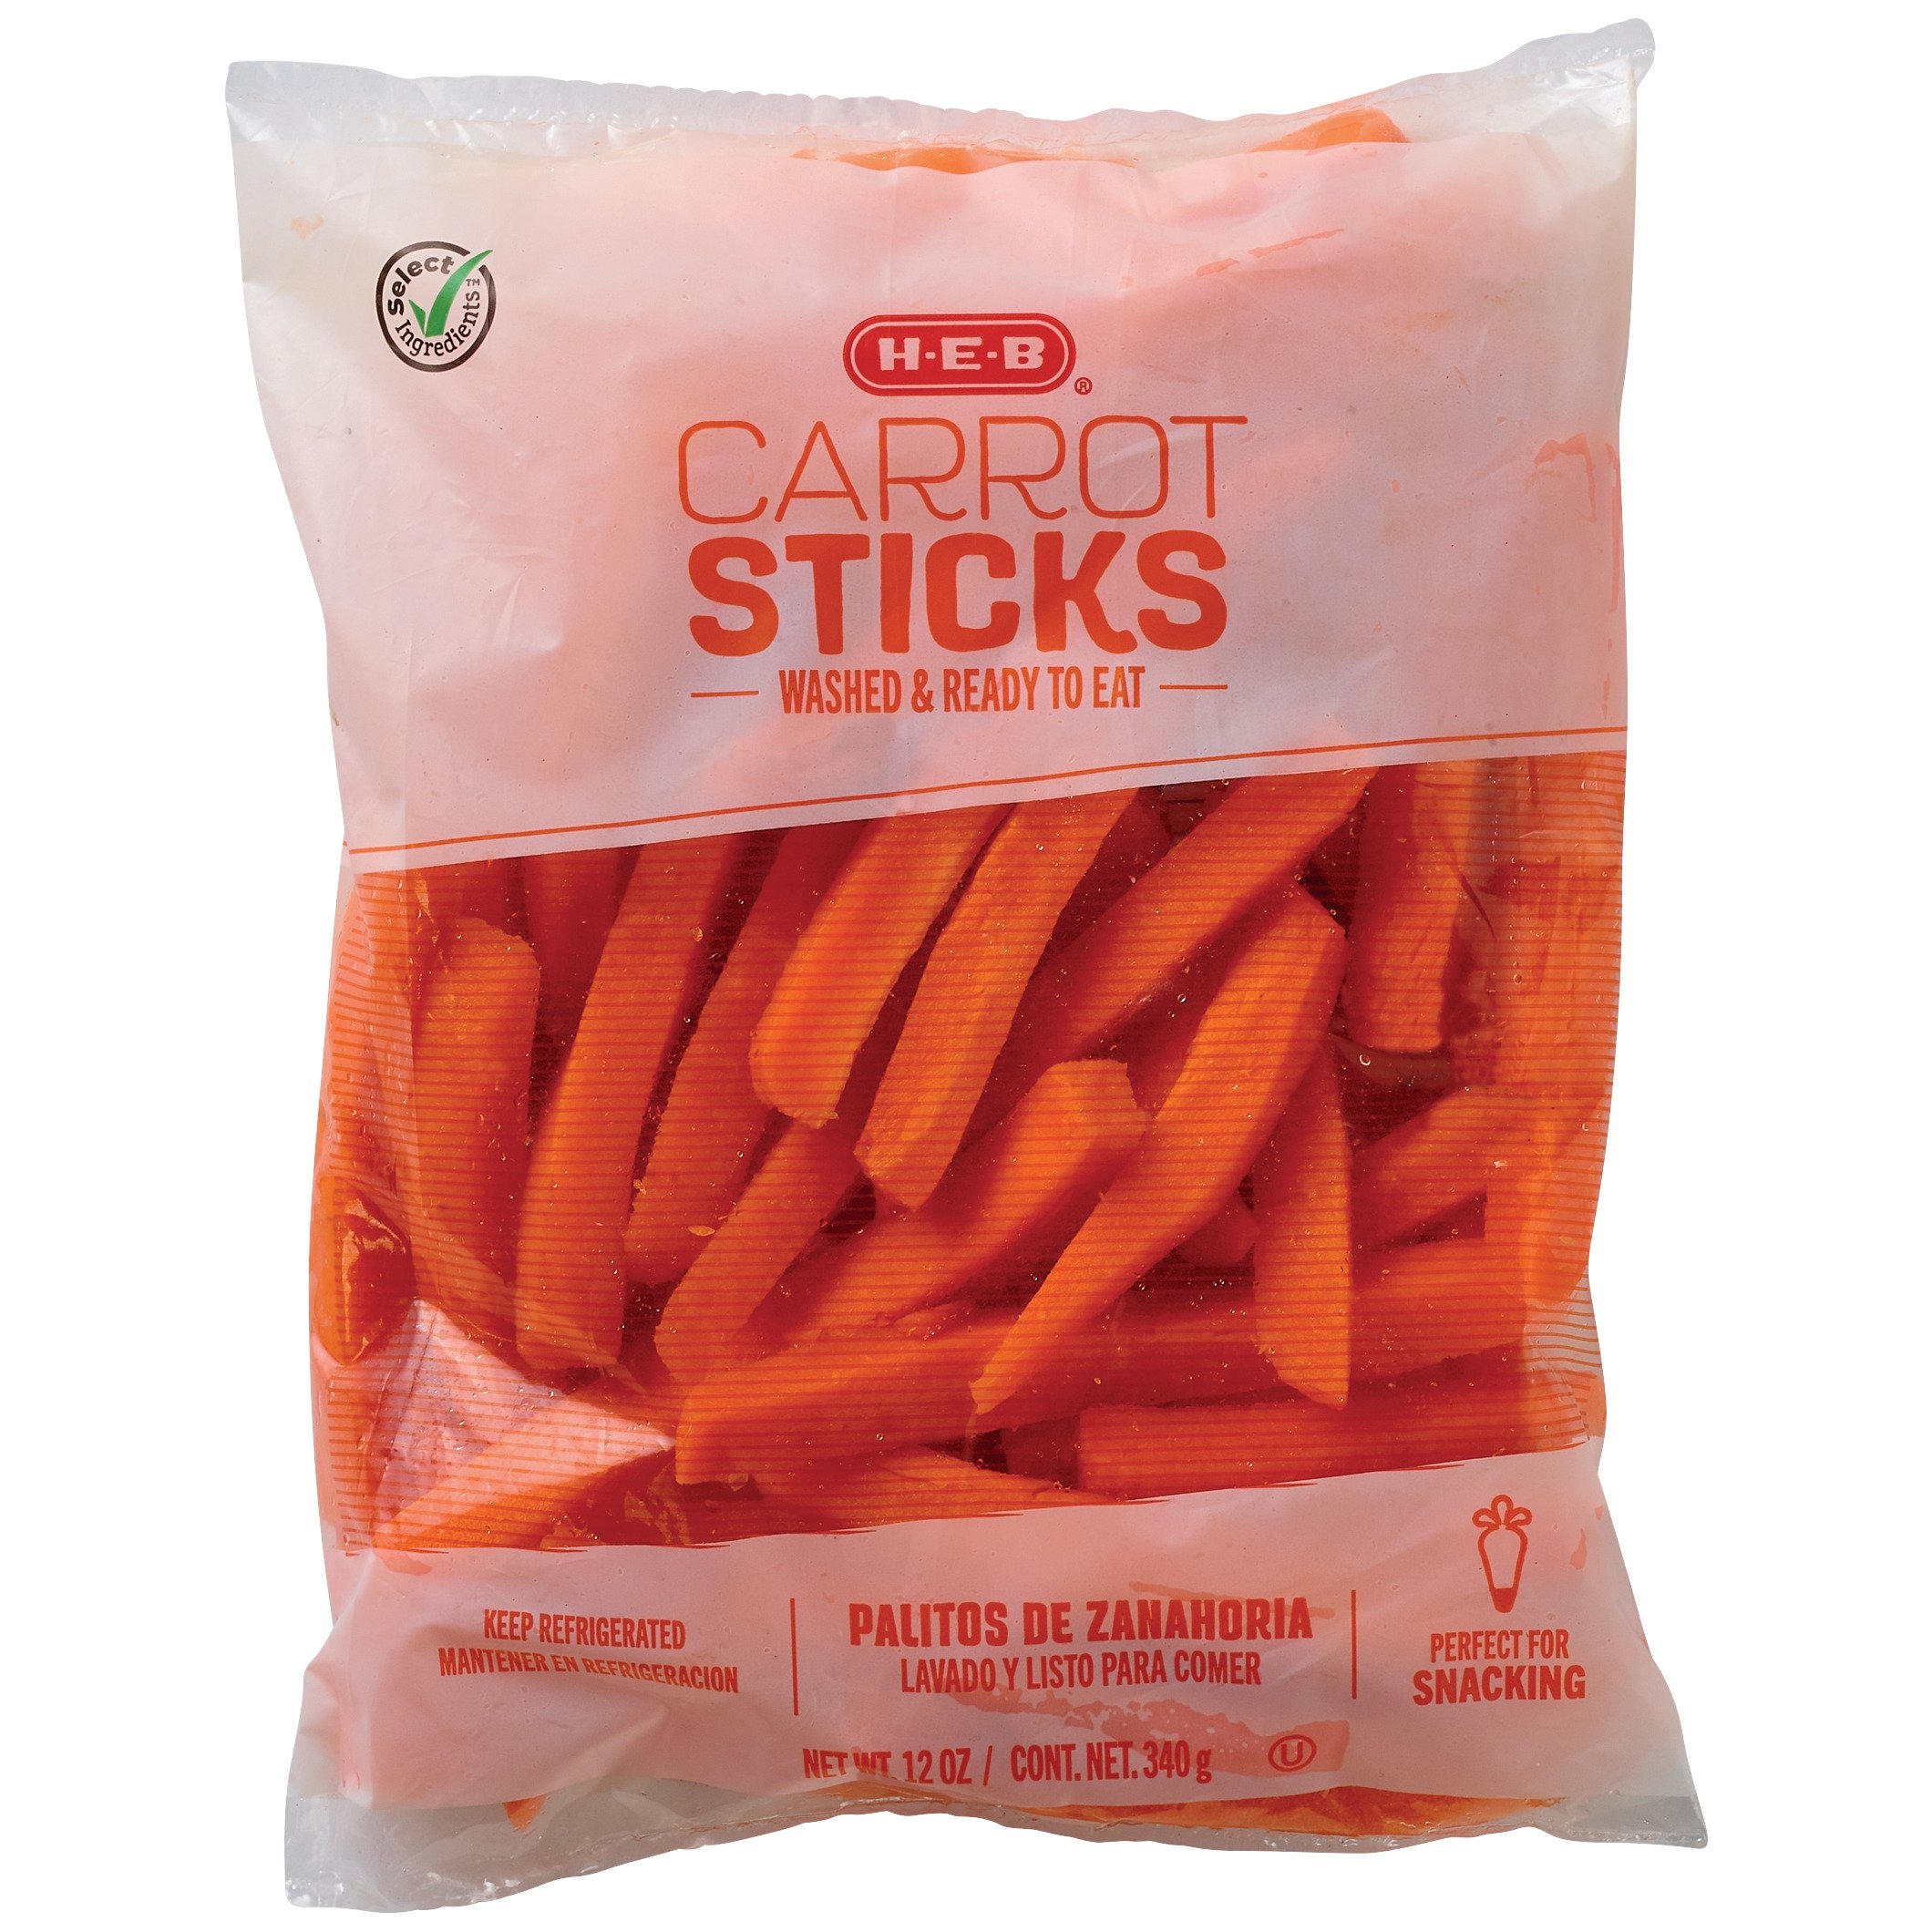 Steam carrot sticks